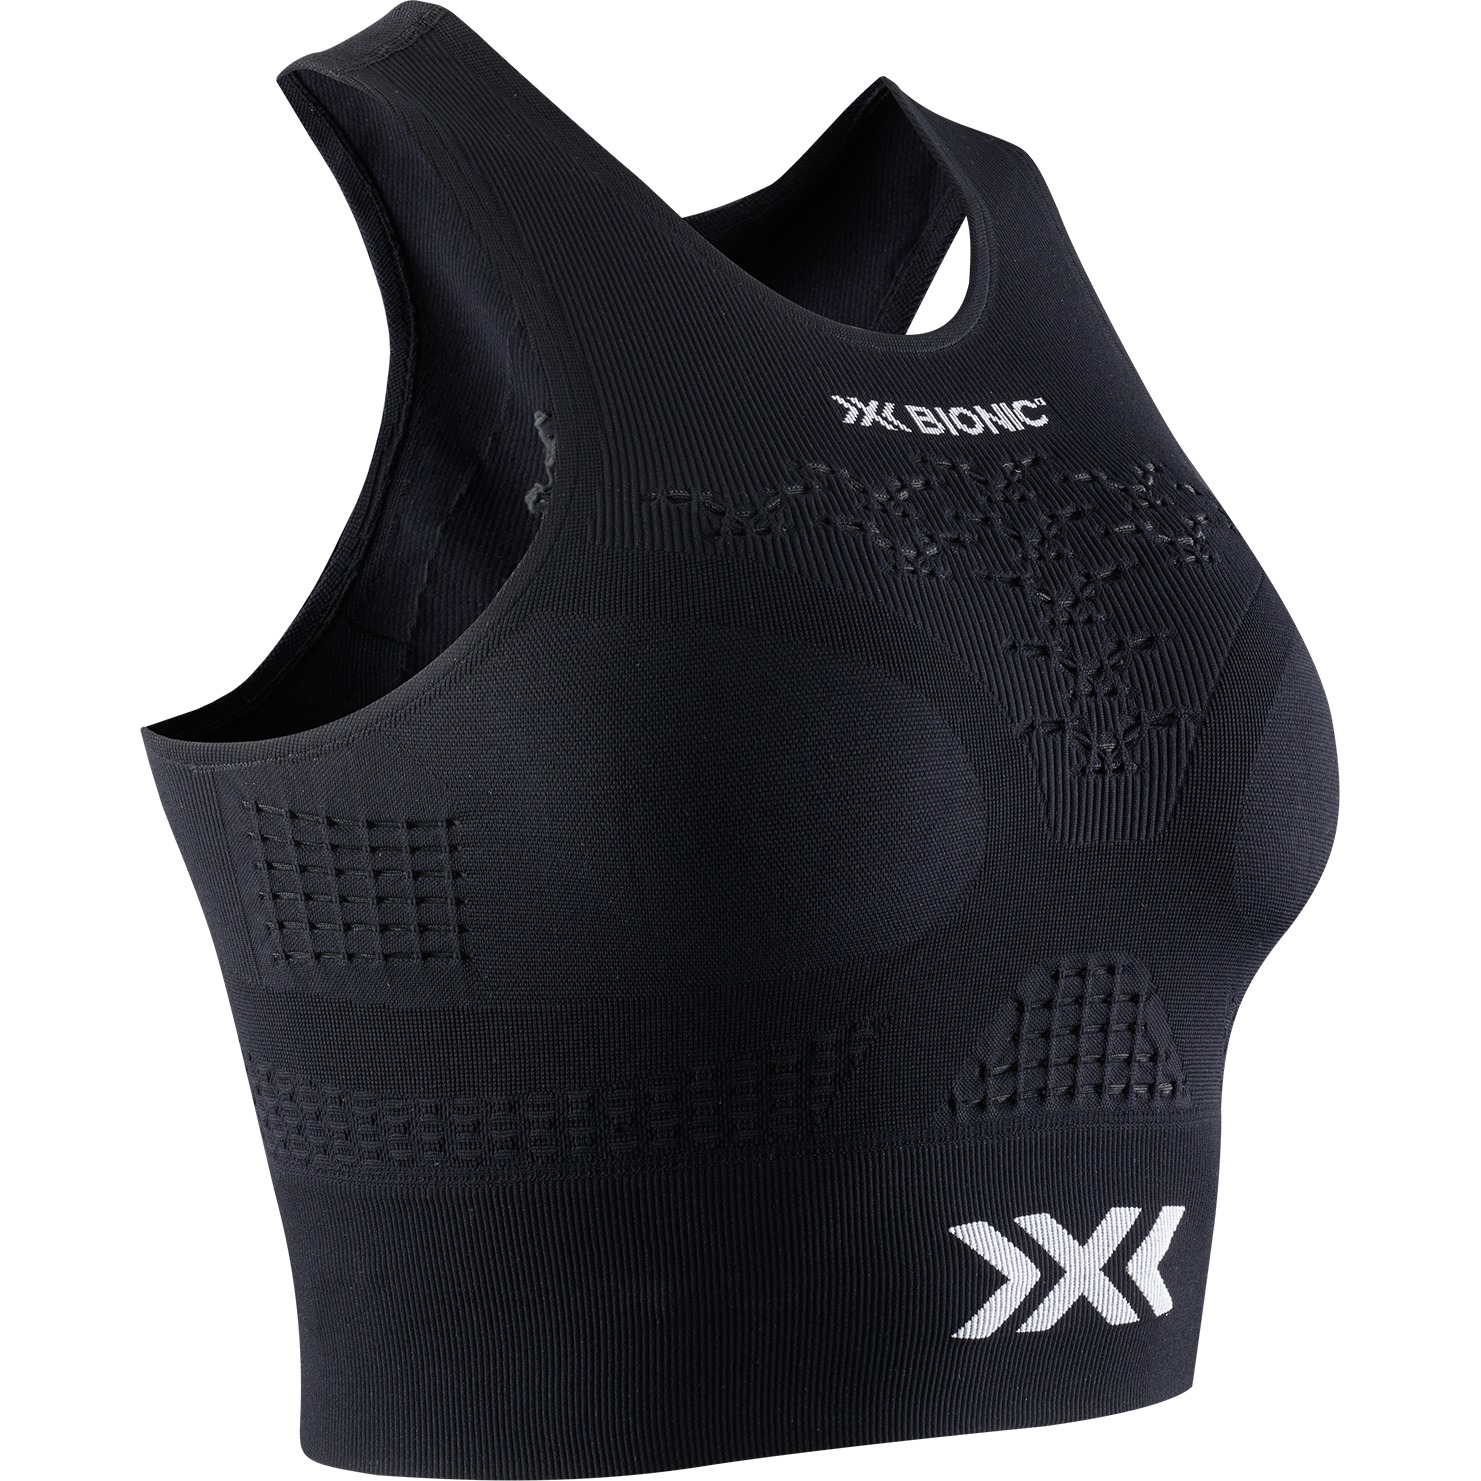 Productfoto van X-Bionic Energizer 4.0 Fitness Top Dames - zwart/wit